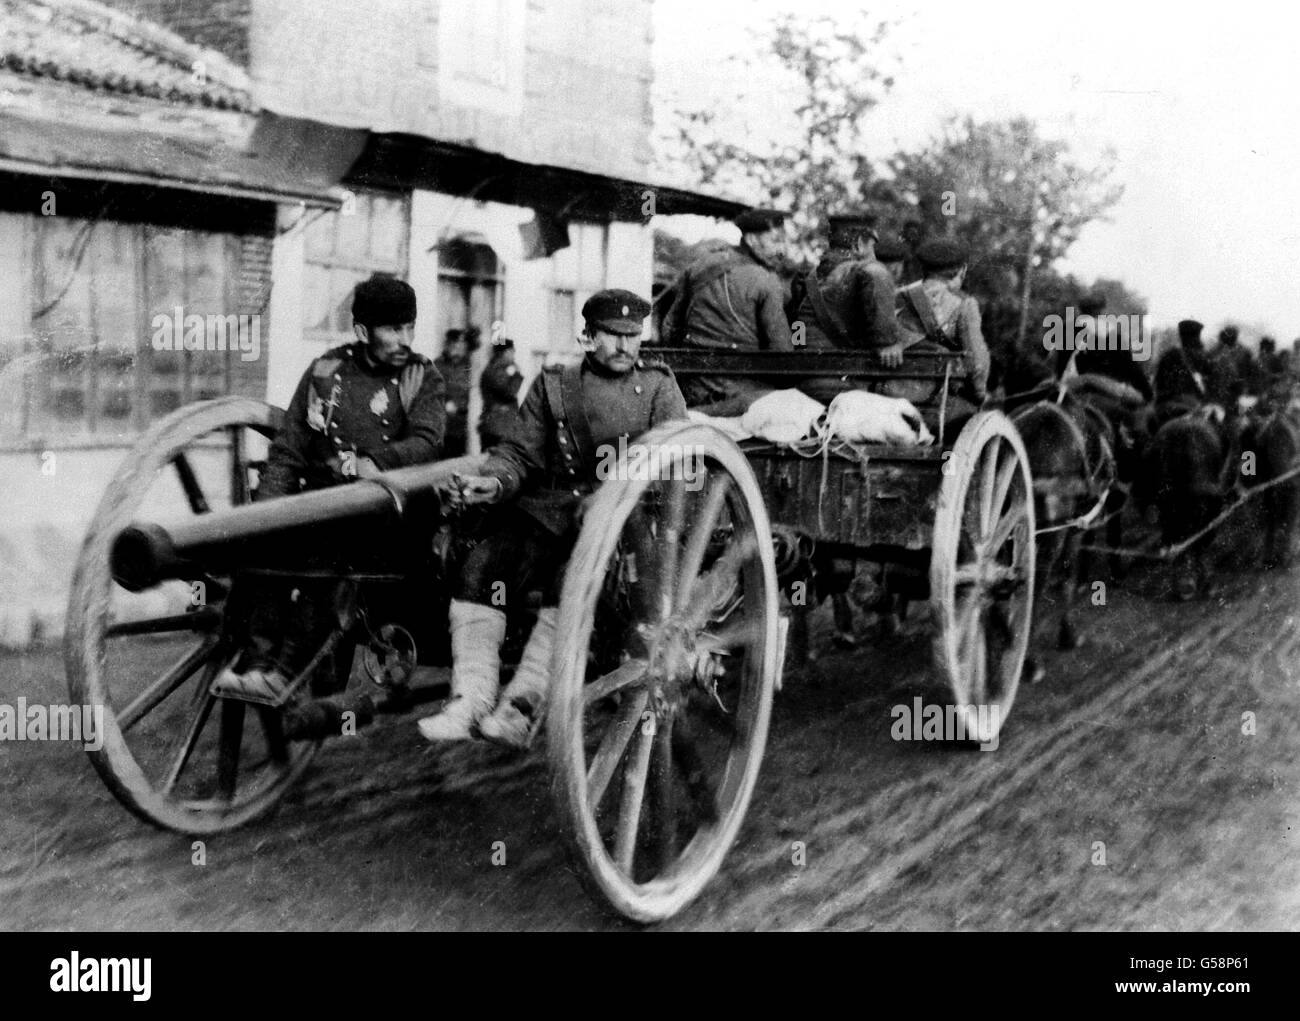 LA GUERRA DE LOS BALCANES: Un equipo de artillería búlgara en la marcha durante la guerra de los Balcanes de 1912-1913. Foto de stock